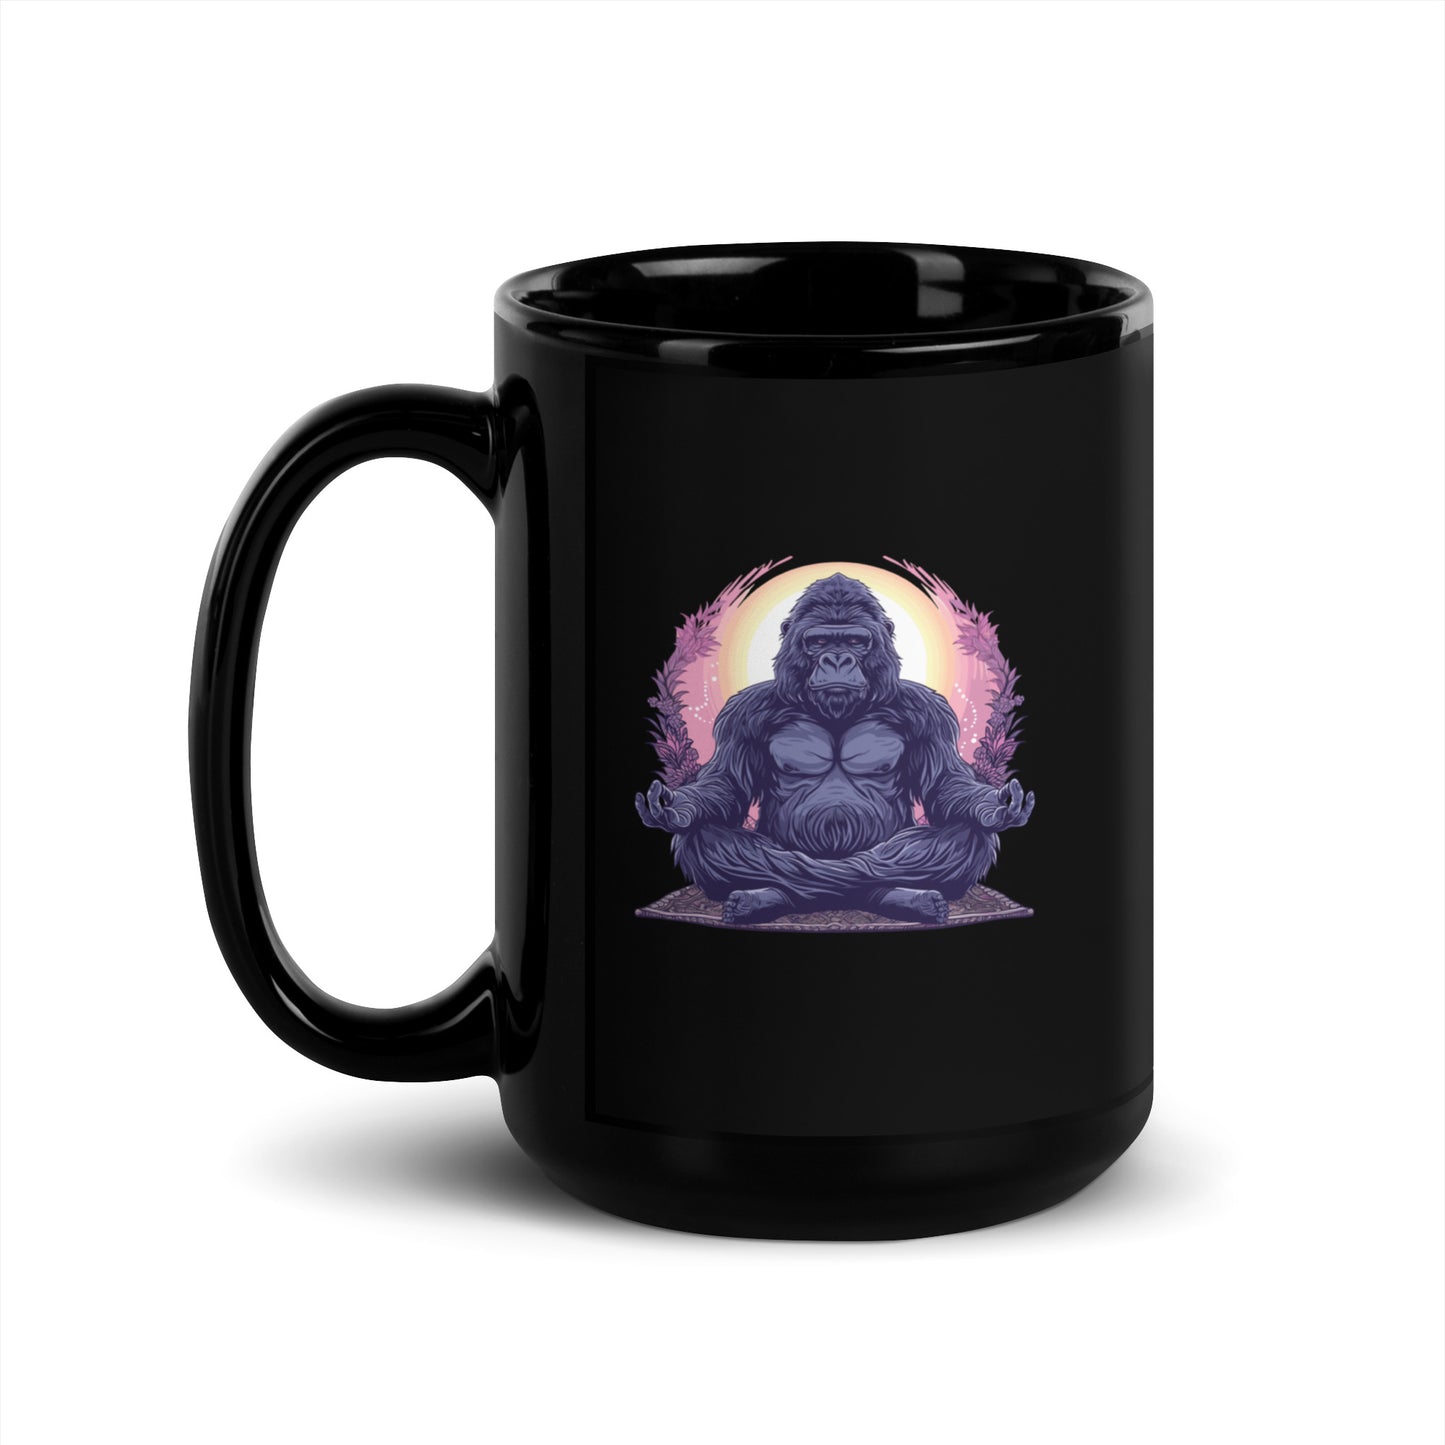 Tranquill Gorilla Black Glossy Mug